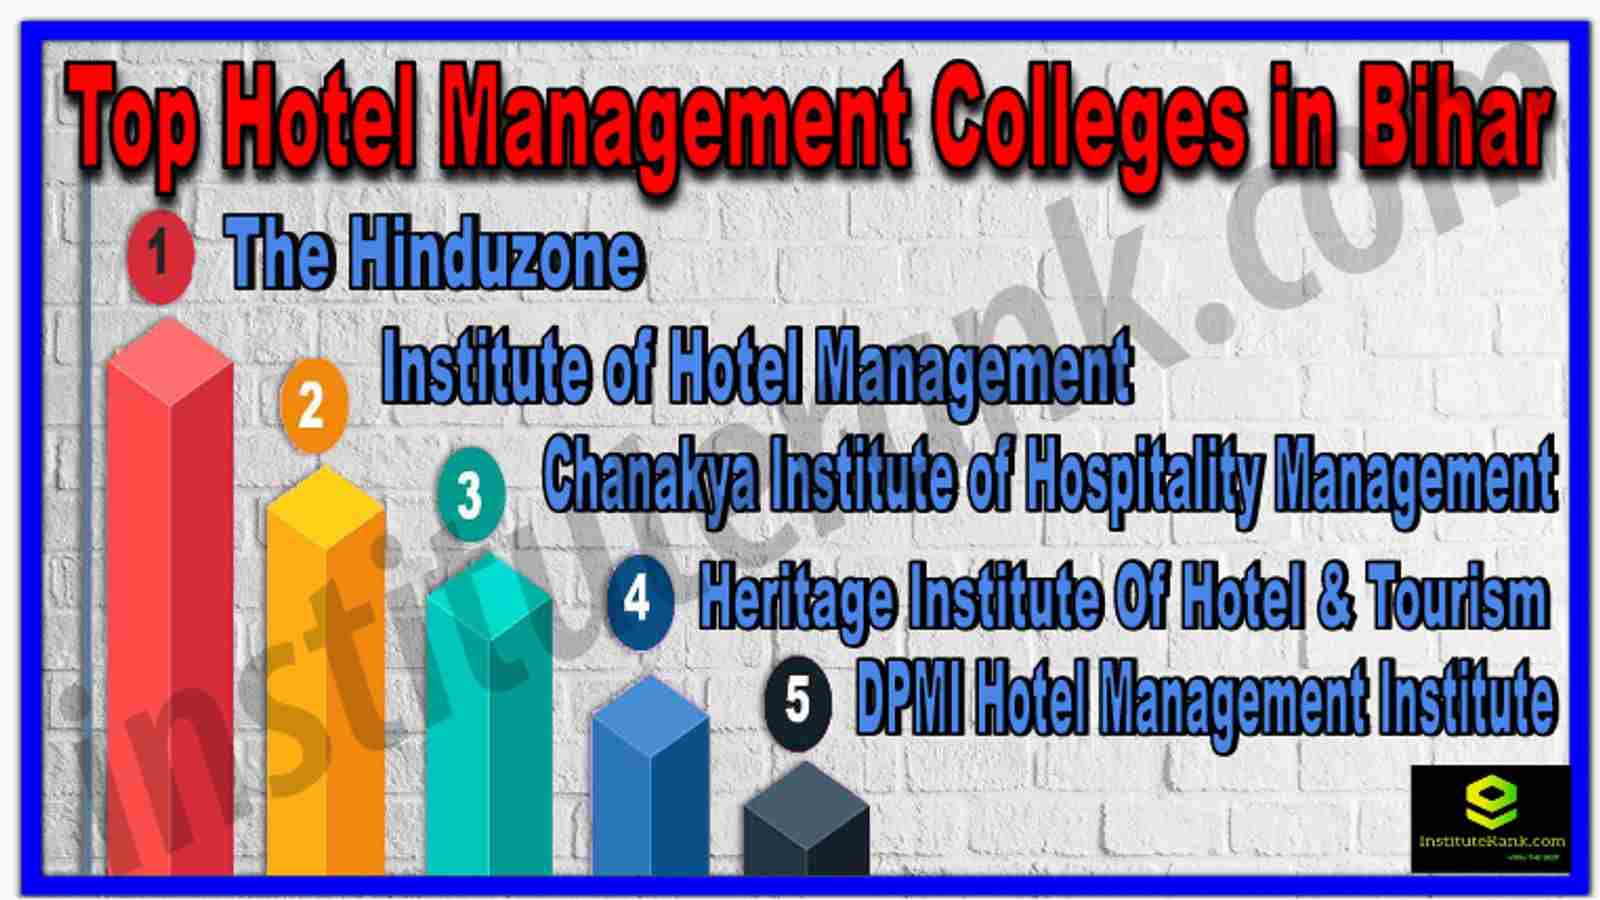 Top Hotel Management Colleges in Bihar